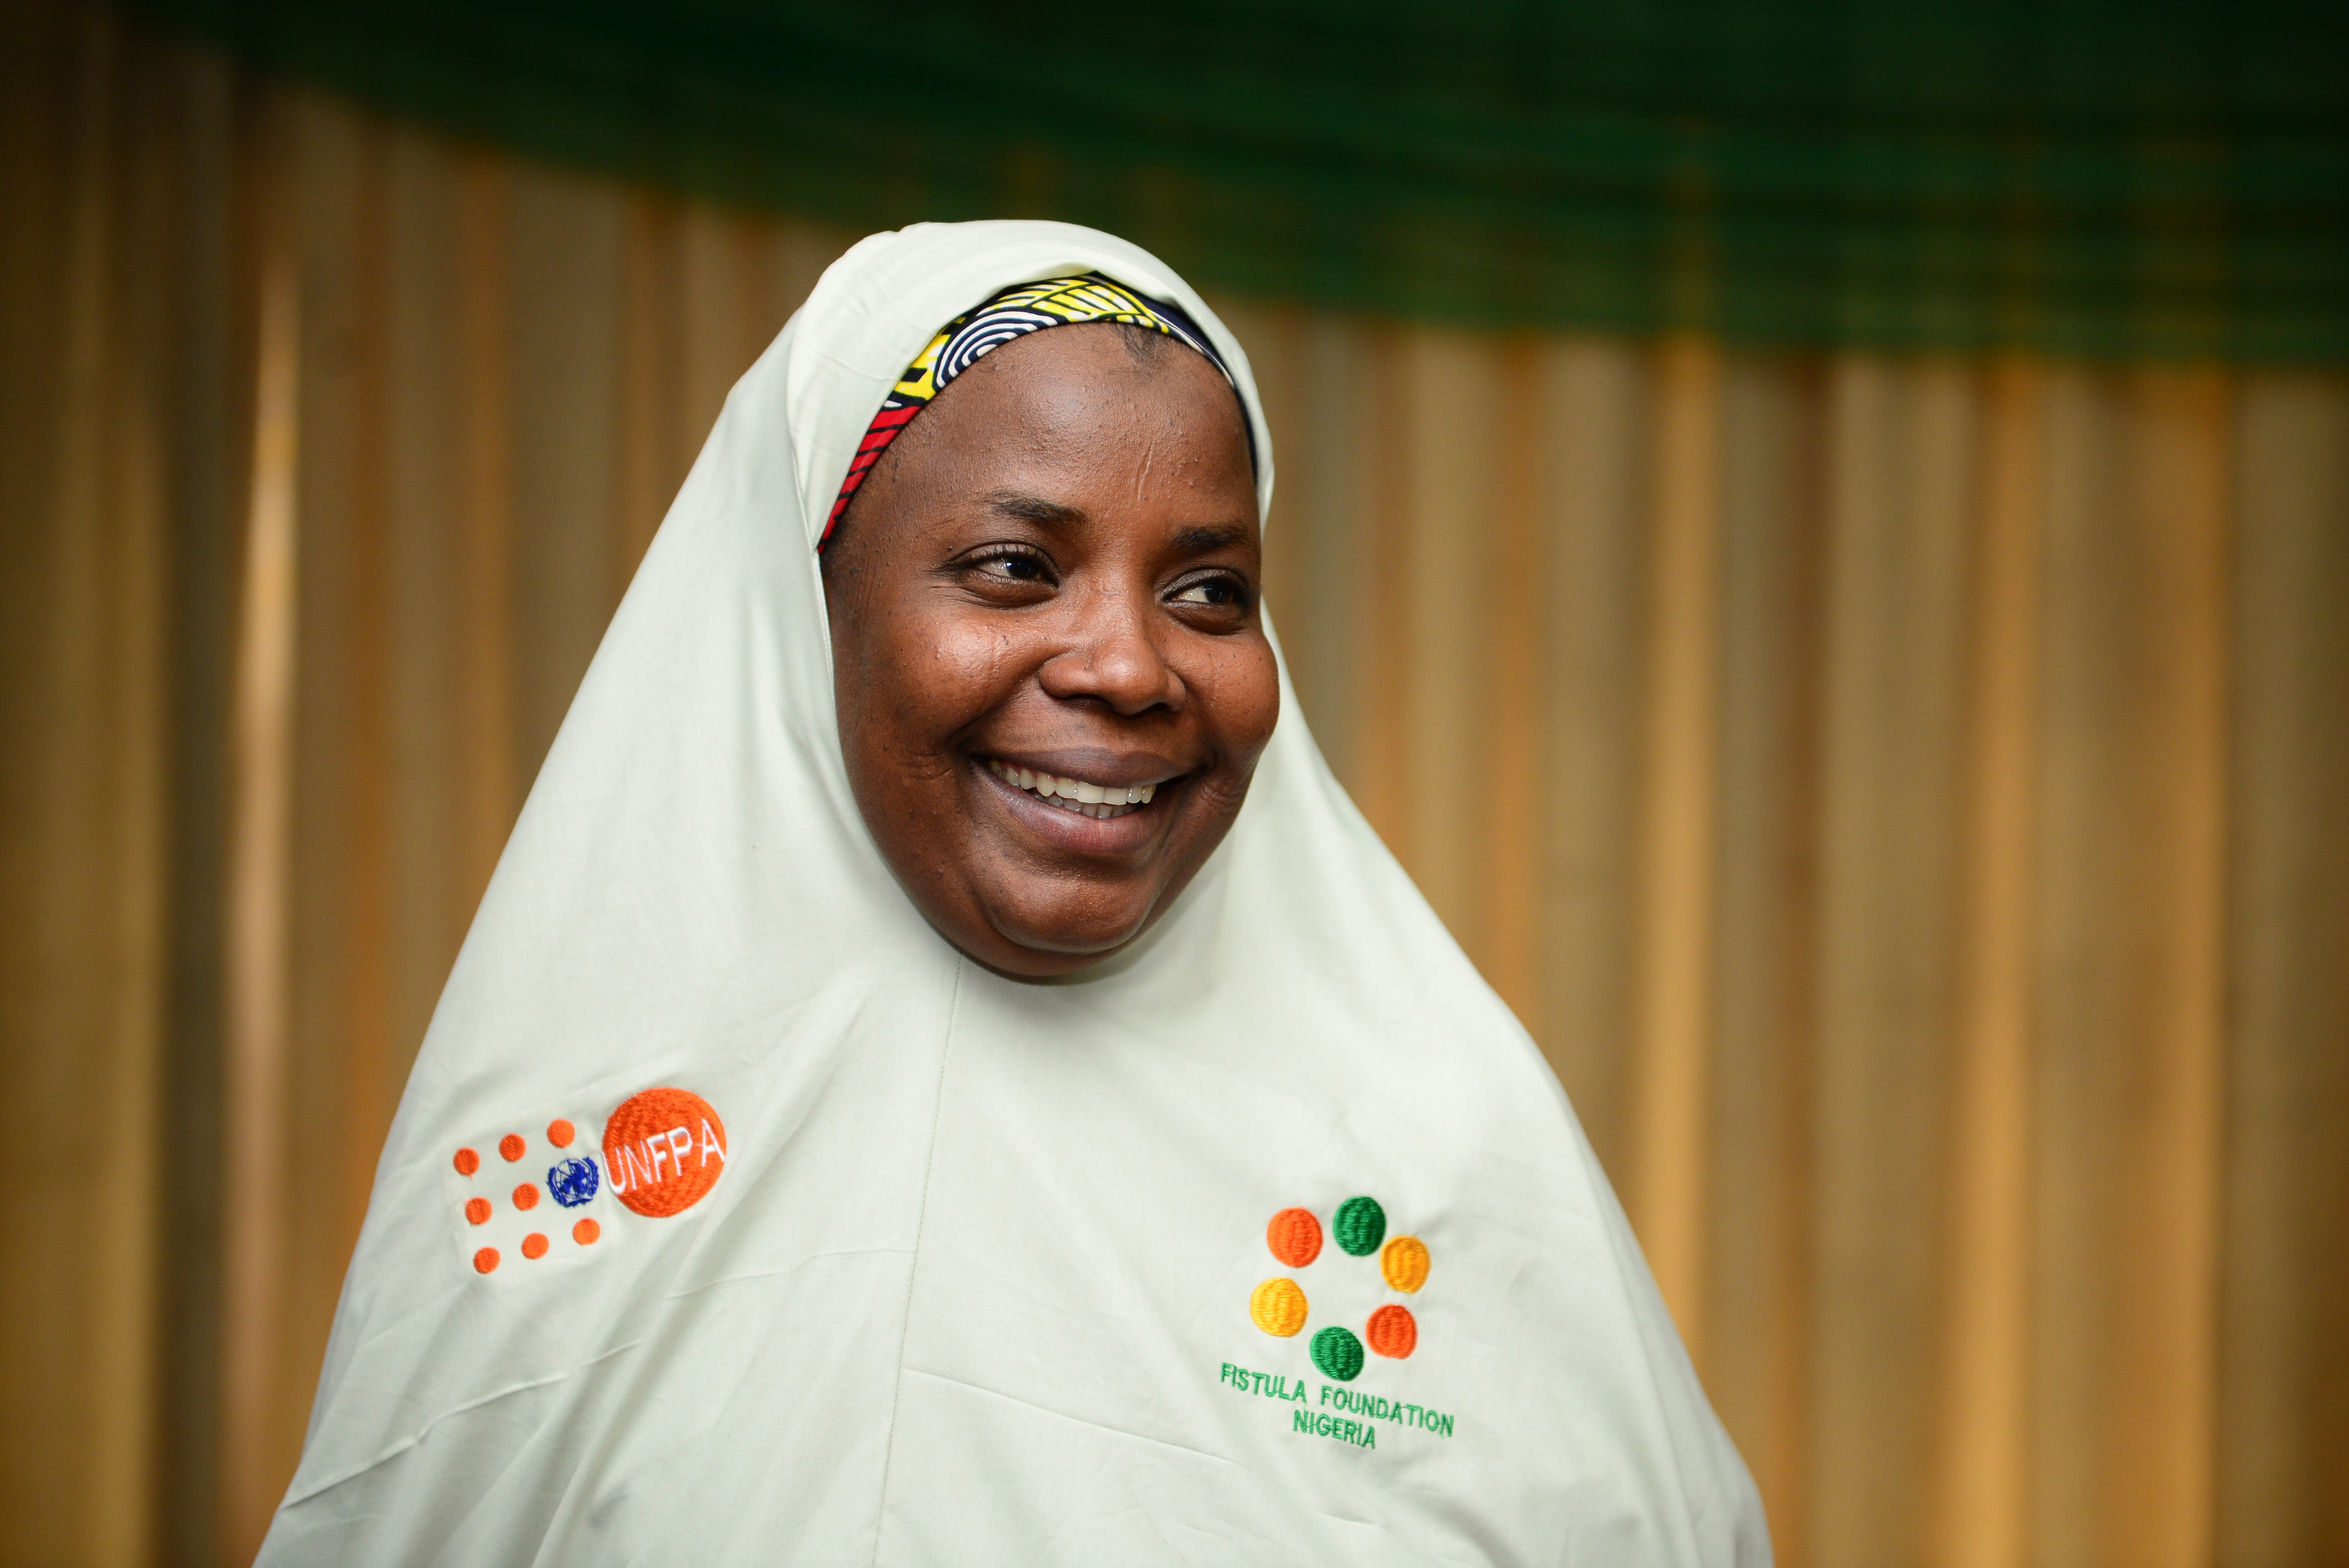 UNFPA Nigeria  UNFPA Nigeria Launches the Bodyright Campaign